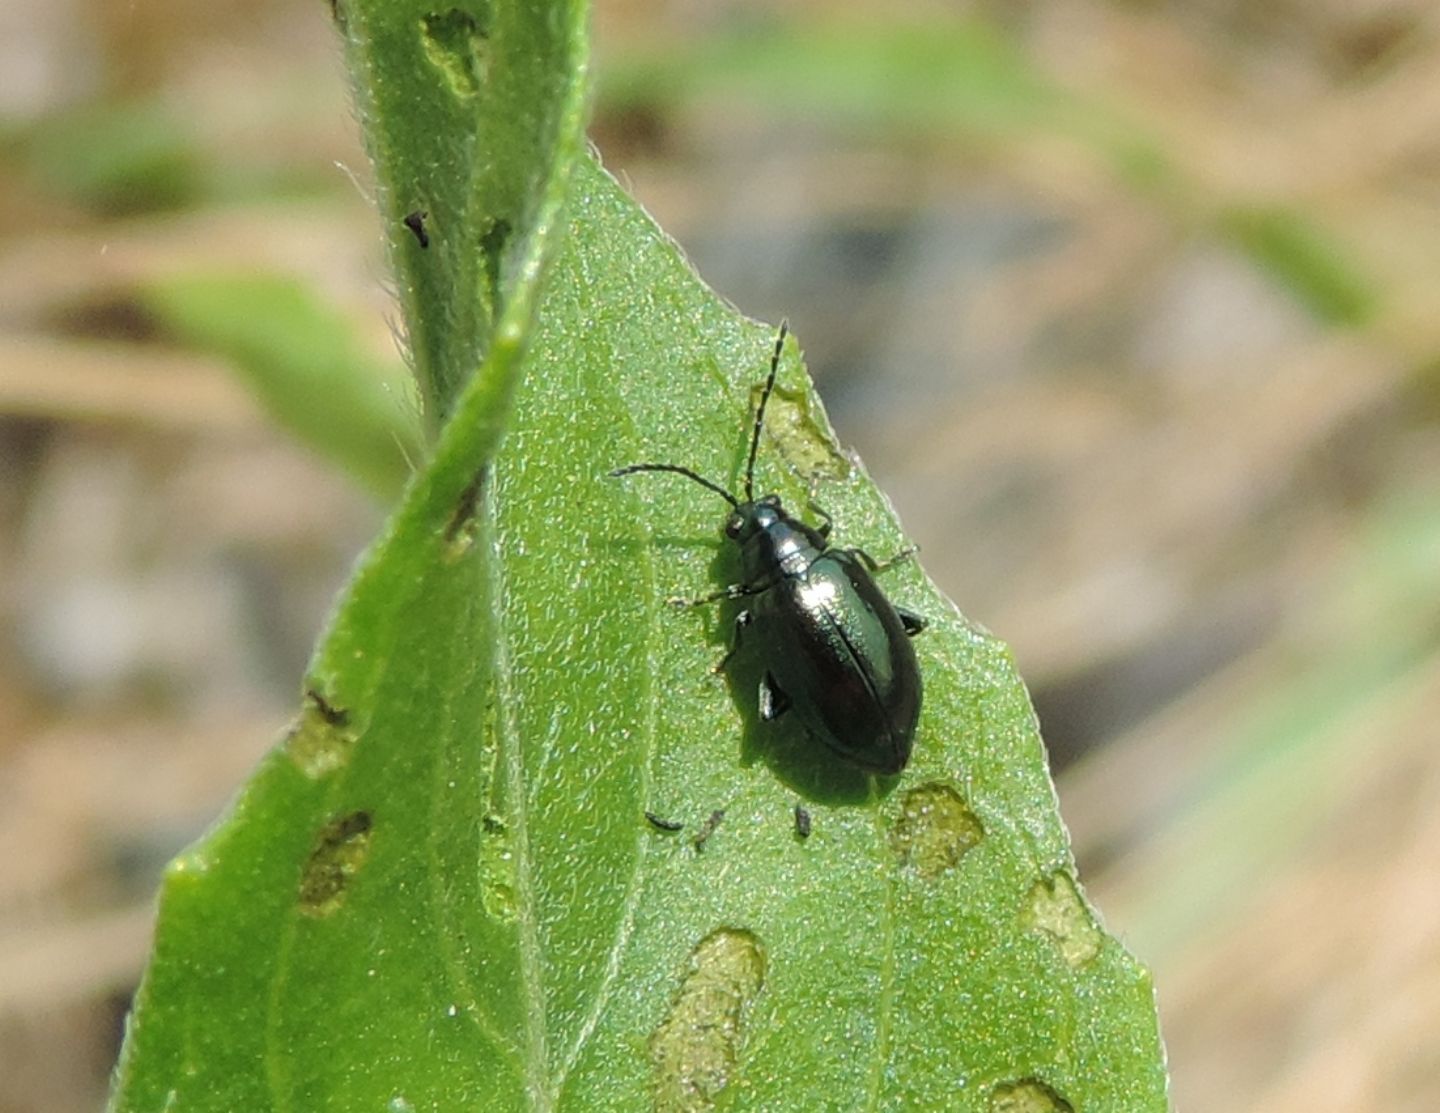 Chryomelidae: Altica oleracea? Altica sp.